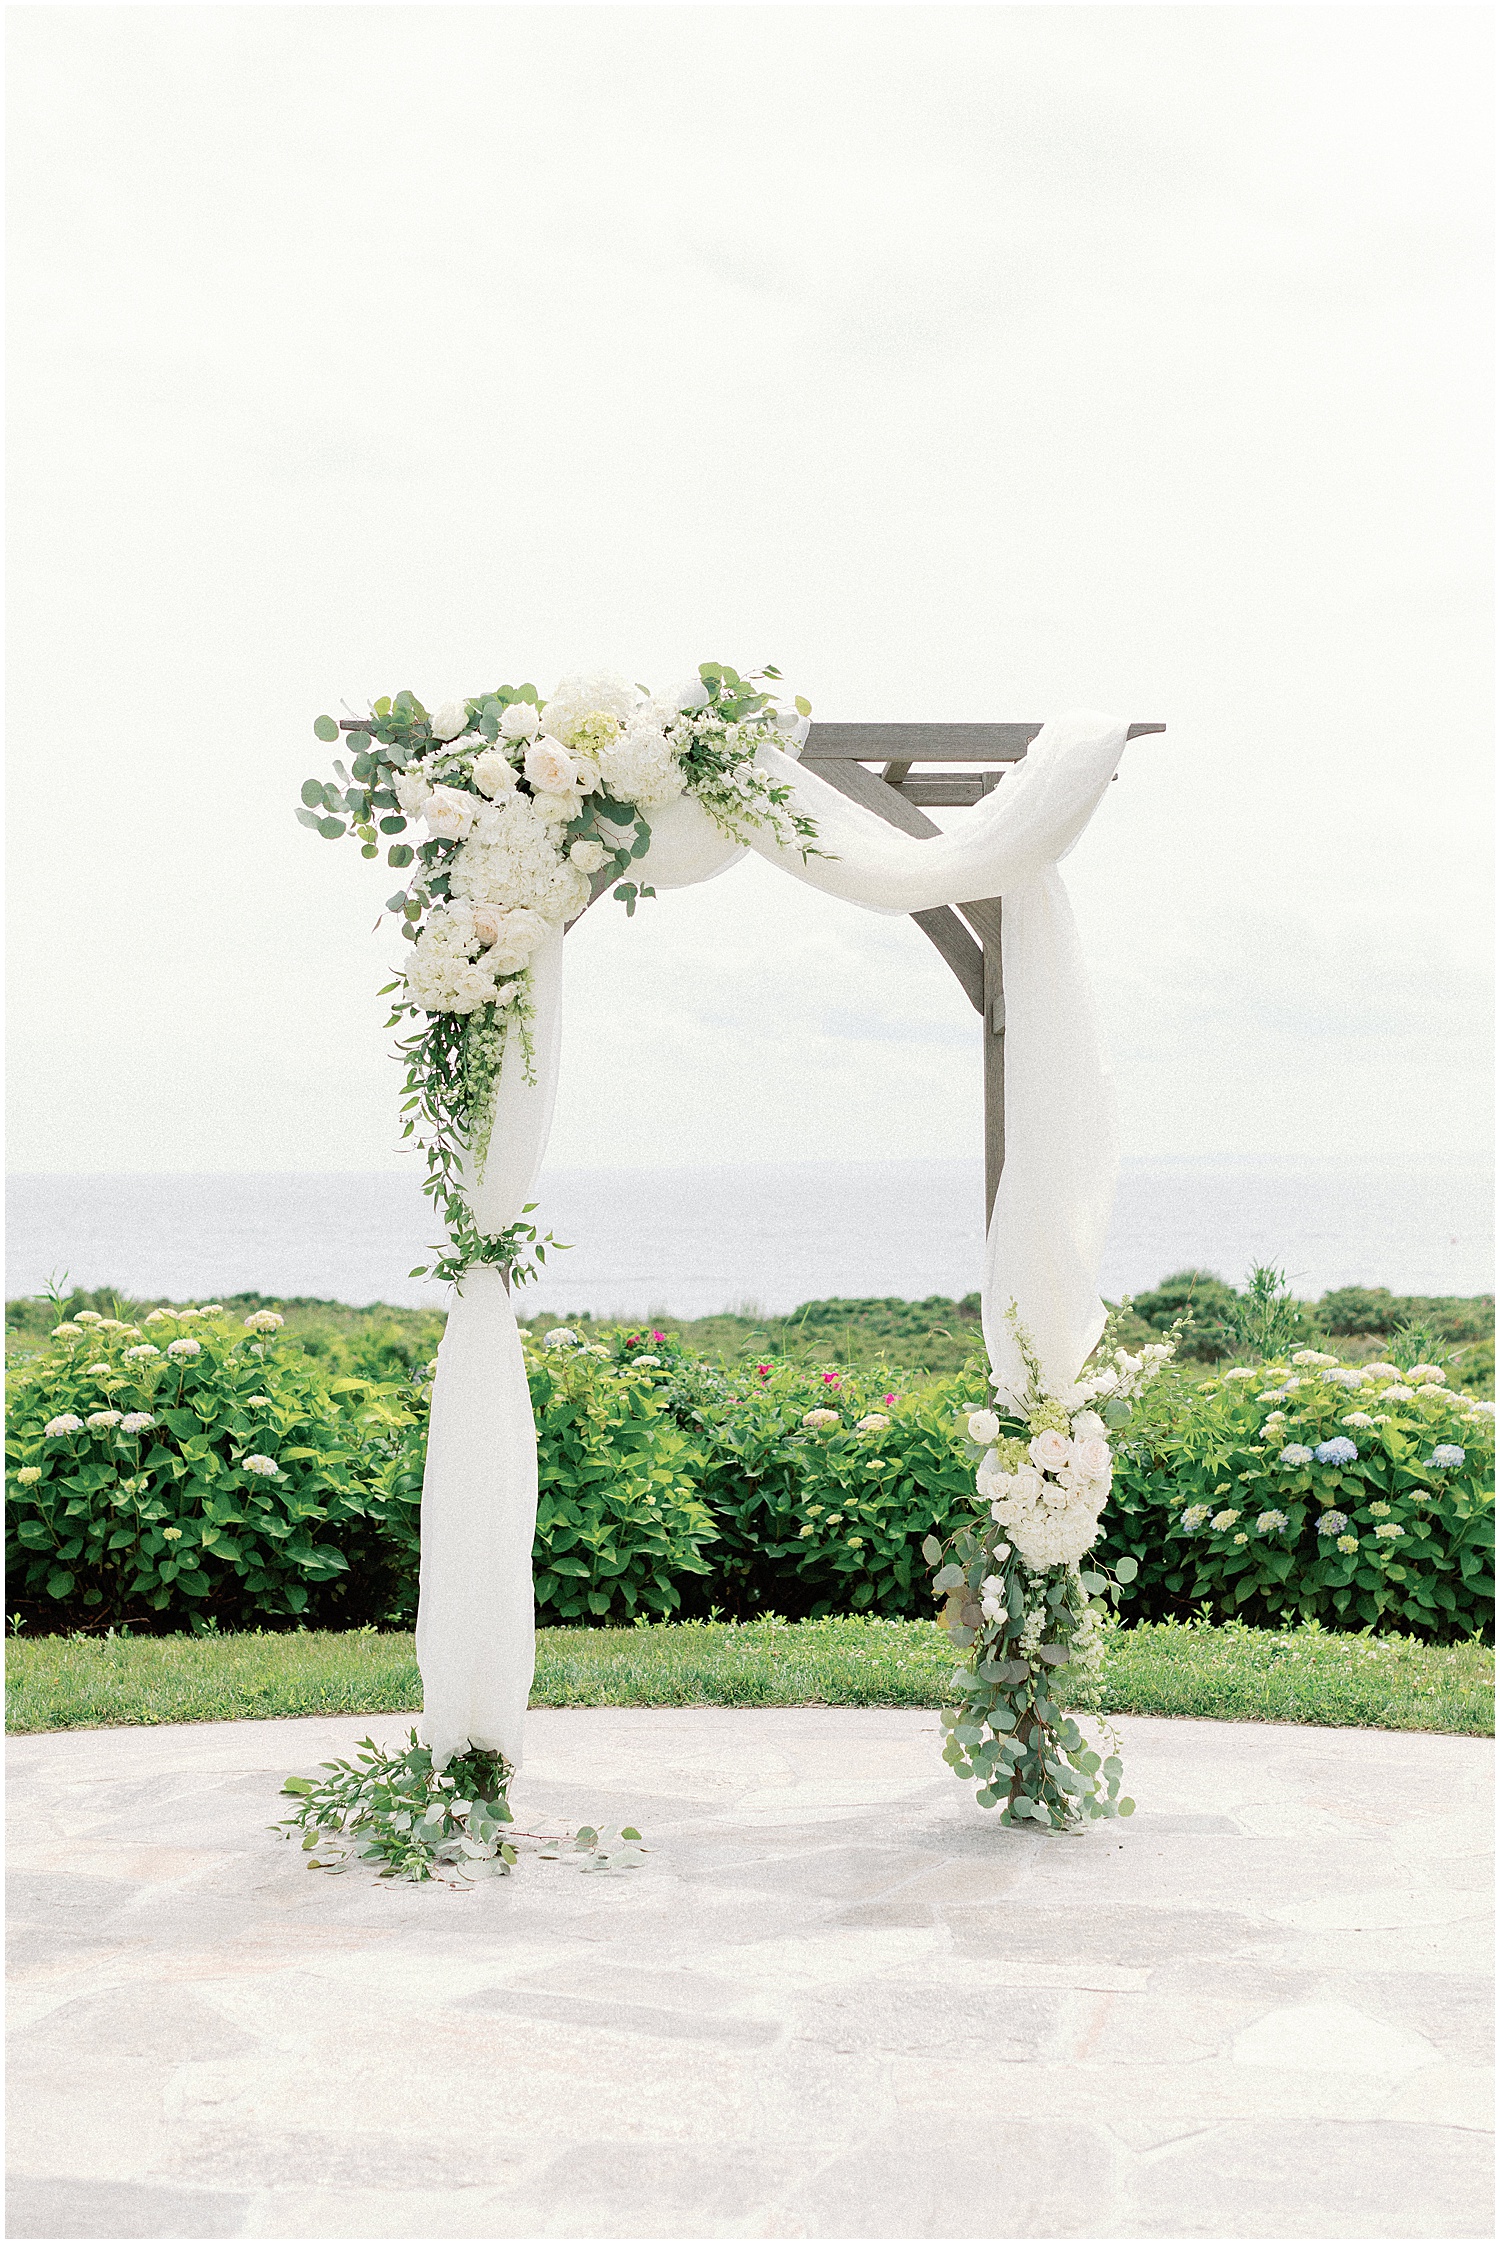 kennebunkport wedding ceremony decor by minka floral design